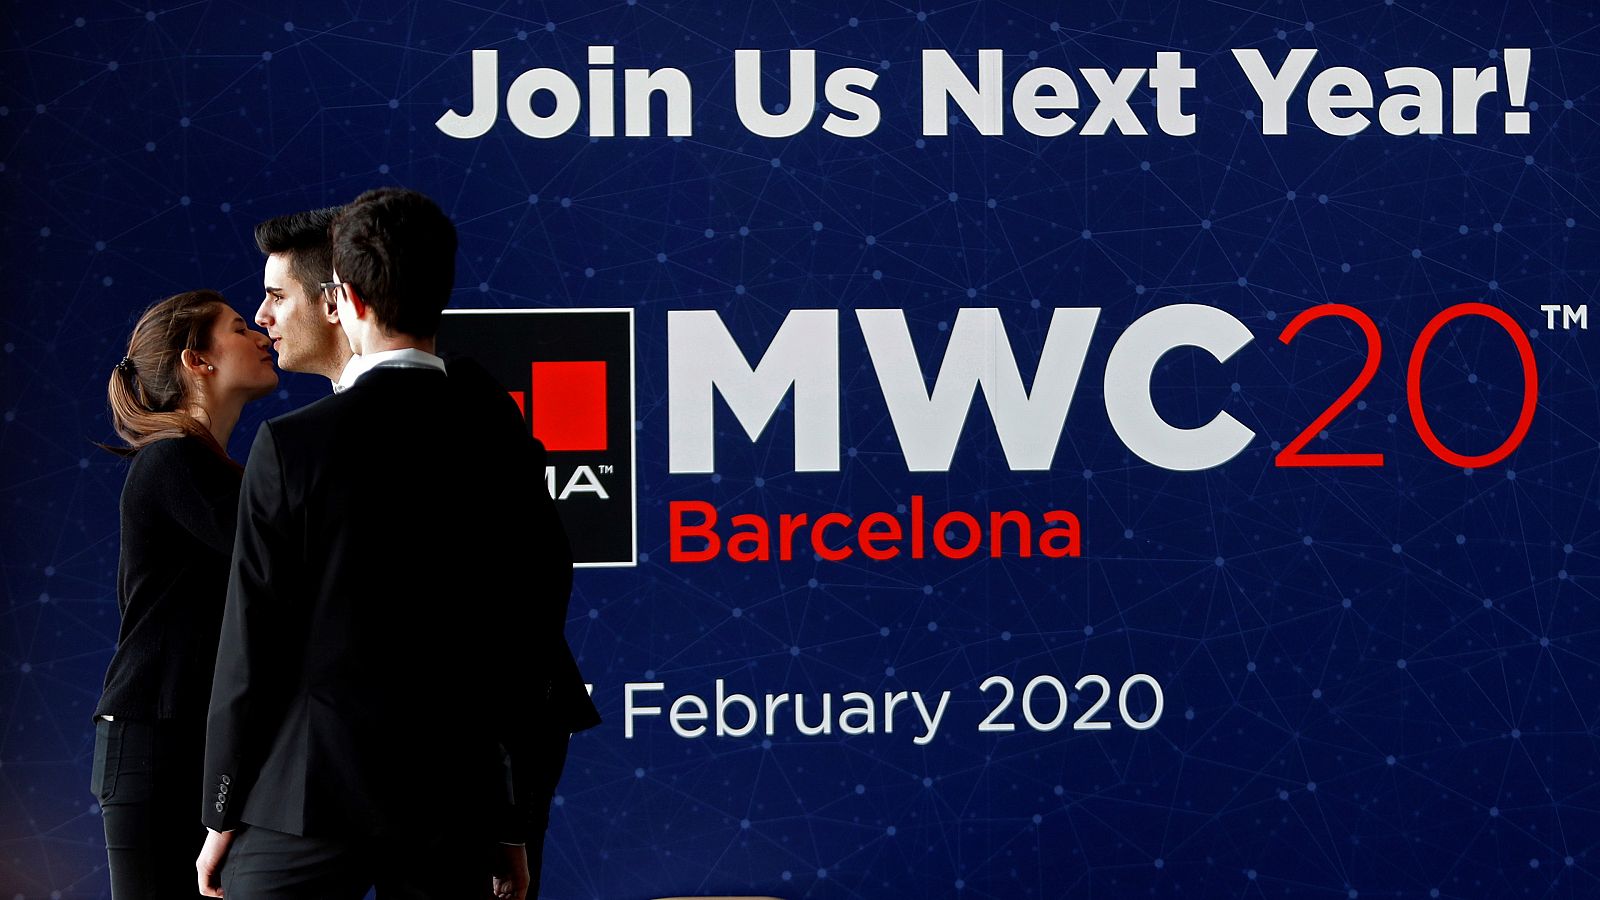 El Mobile World Congress (MWC) cerró la edición de 2019 con la cifra récord de 109.000 asistentes en su decimocuarta edición en Barcelona.